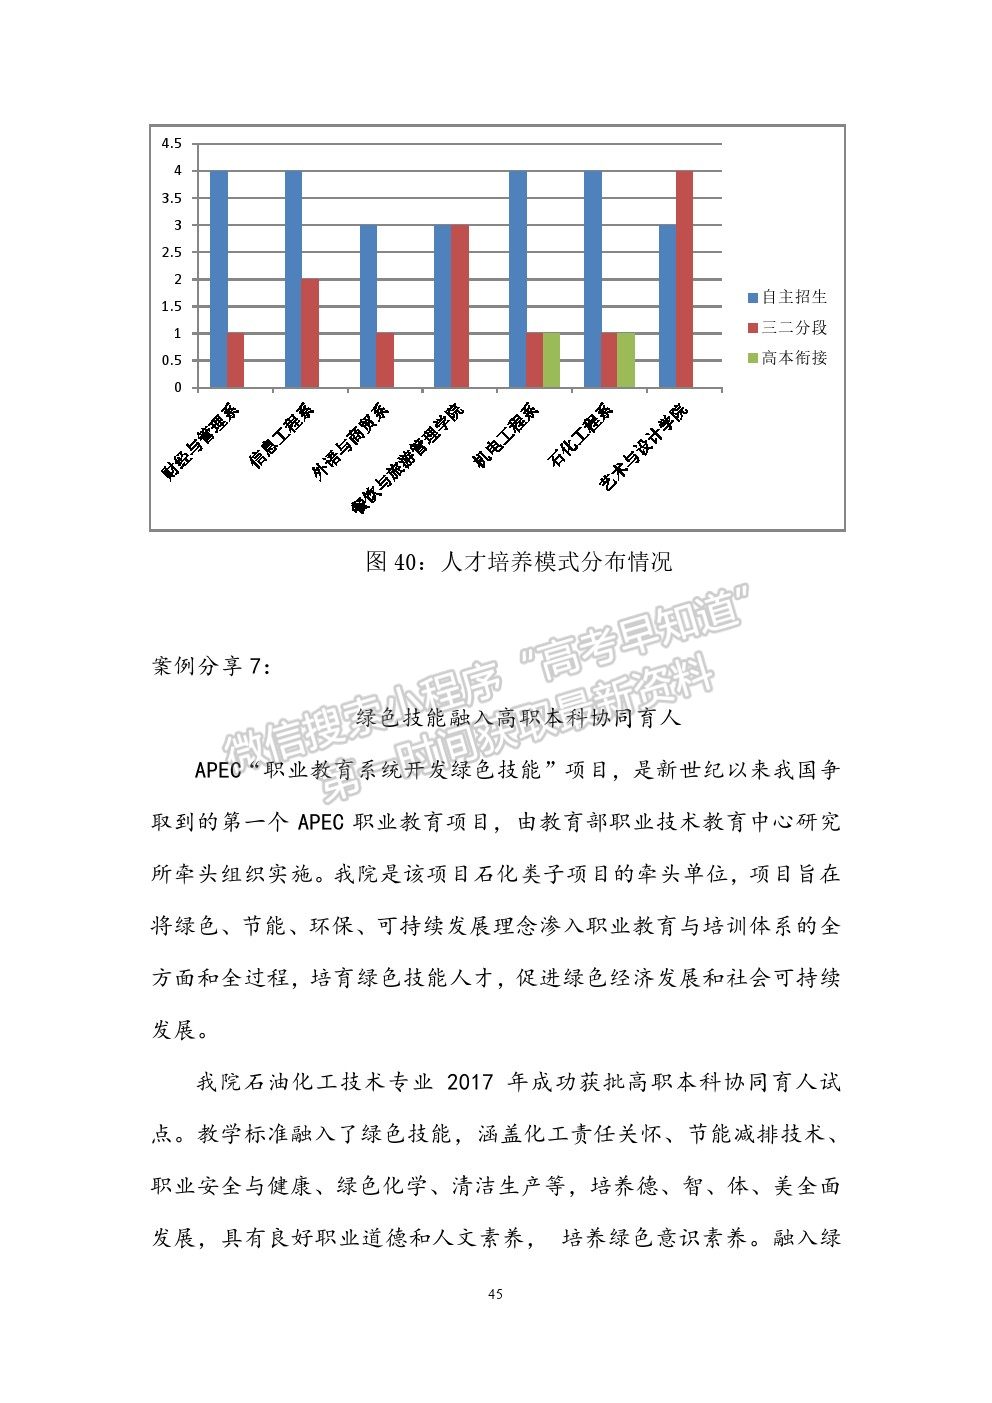 广州工程技术职业学院2019年就业质量报告